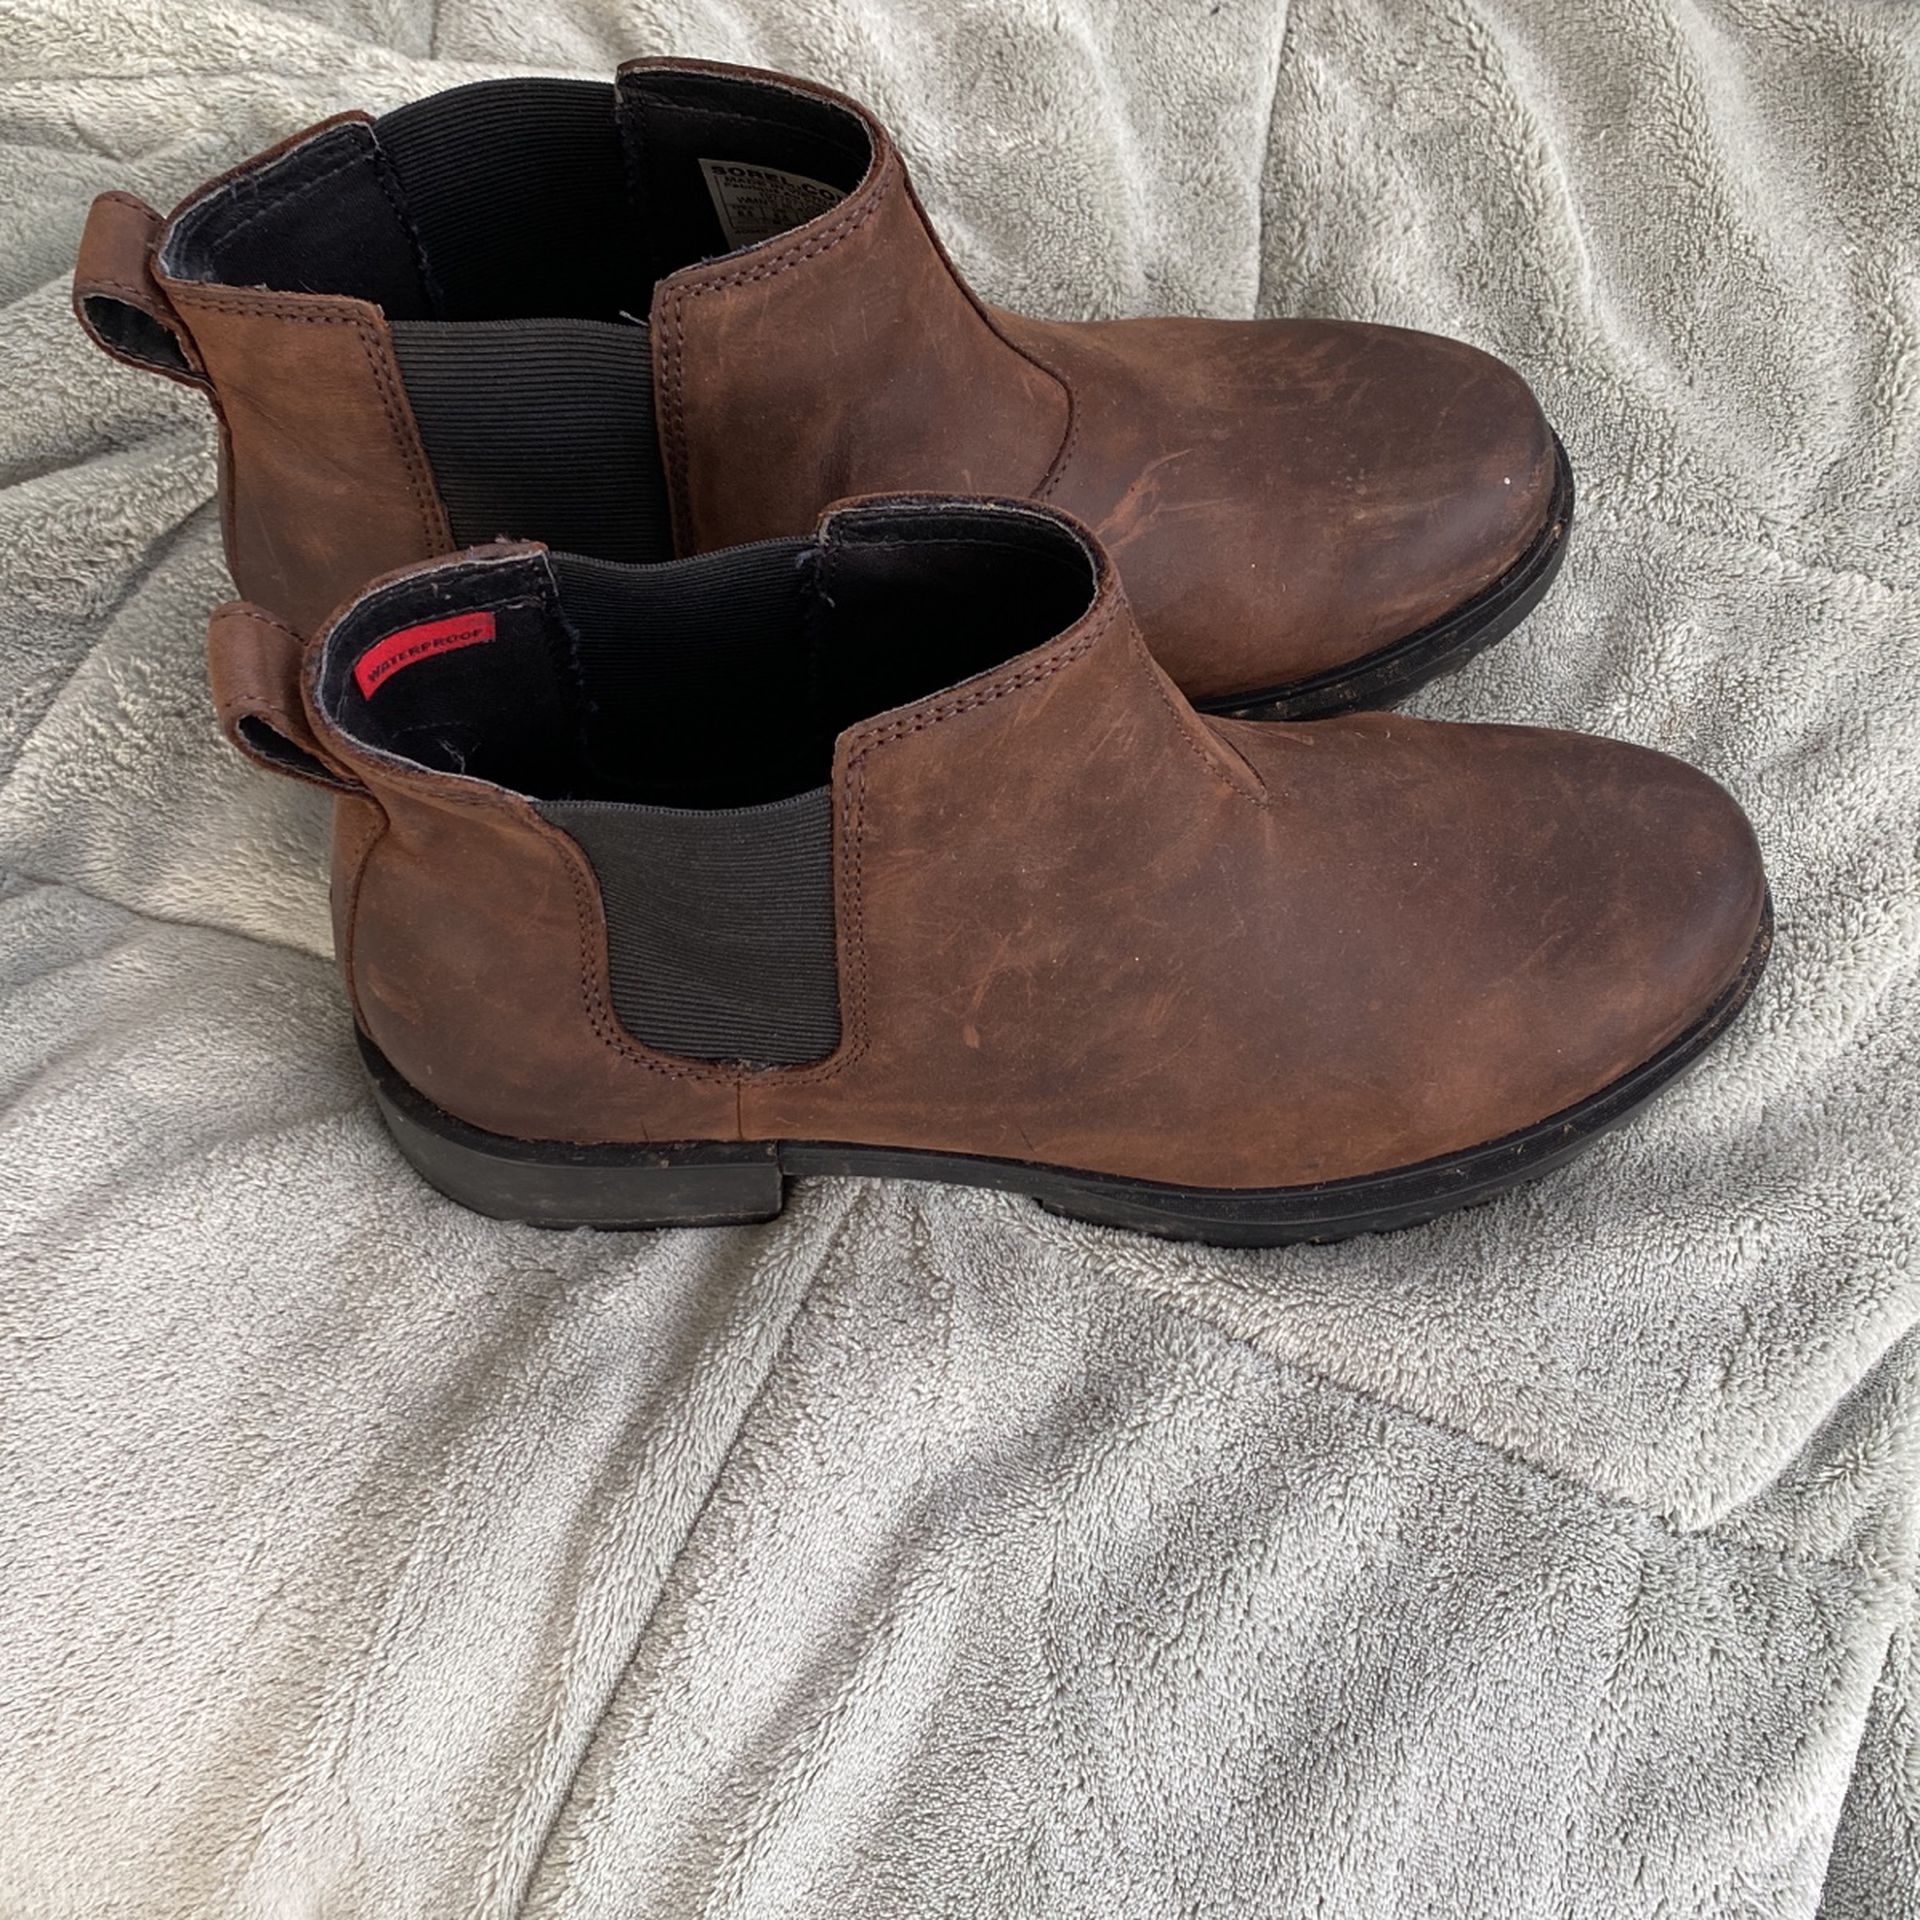 Sorel Waterproof Boots Womens Size 8.5 Worn Once